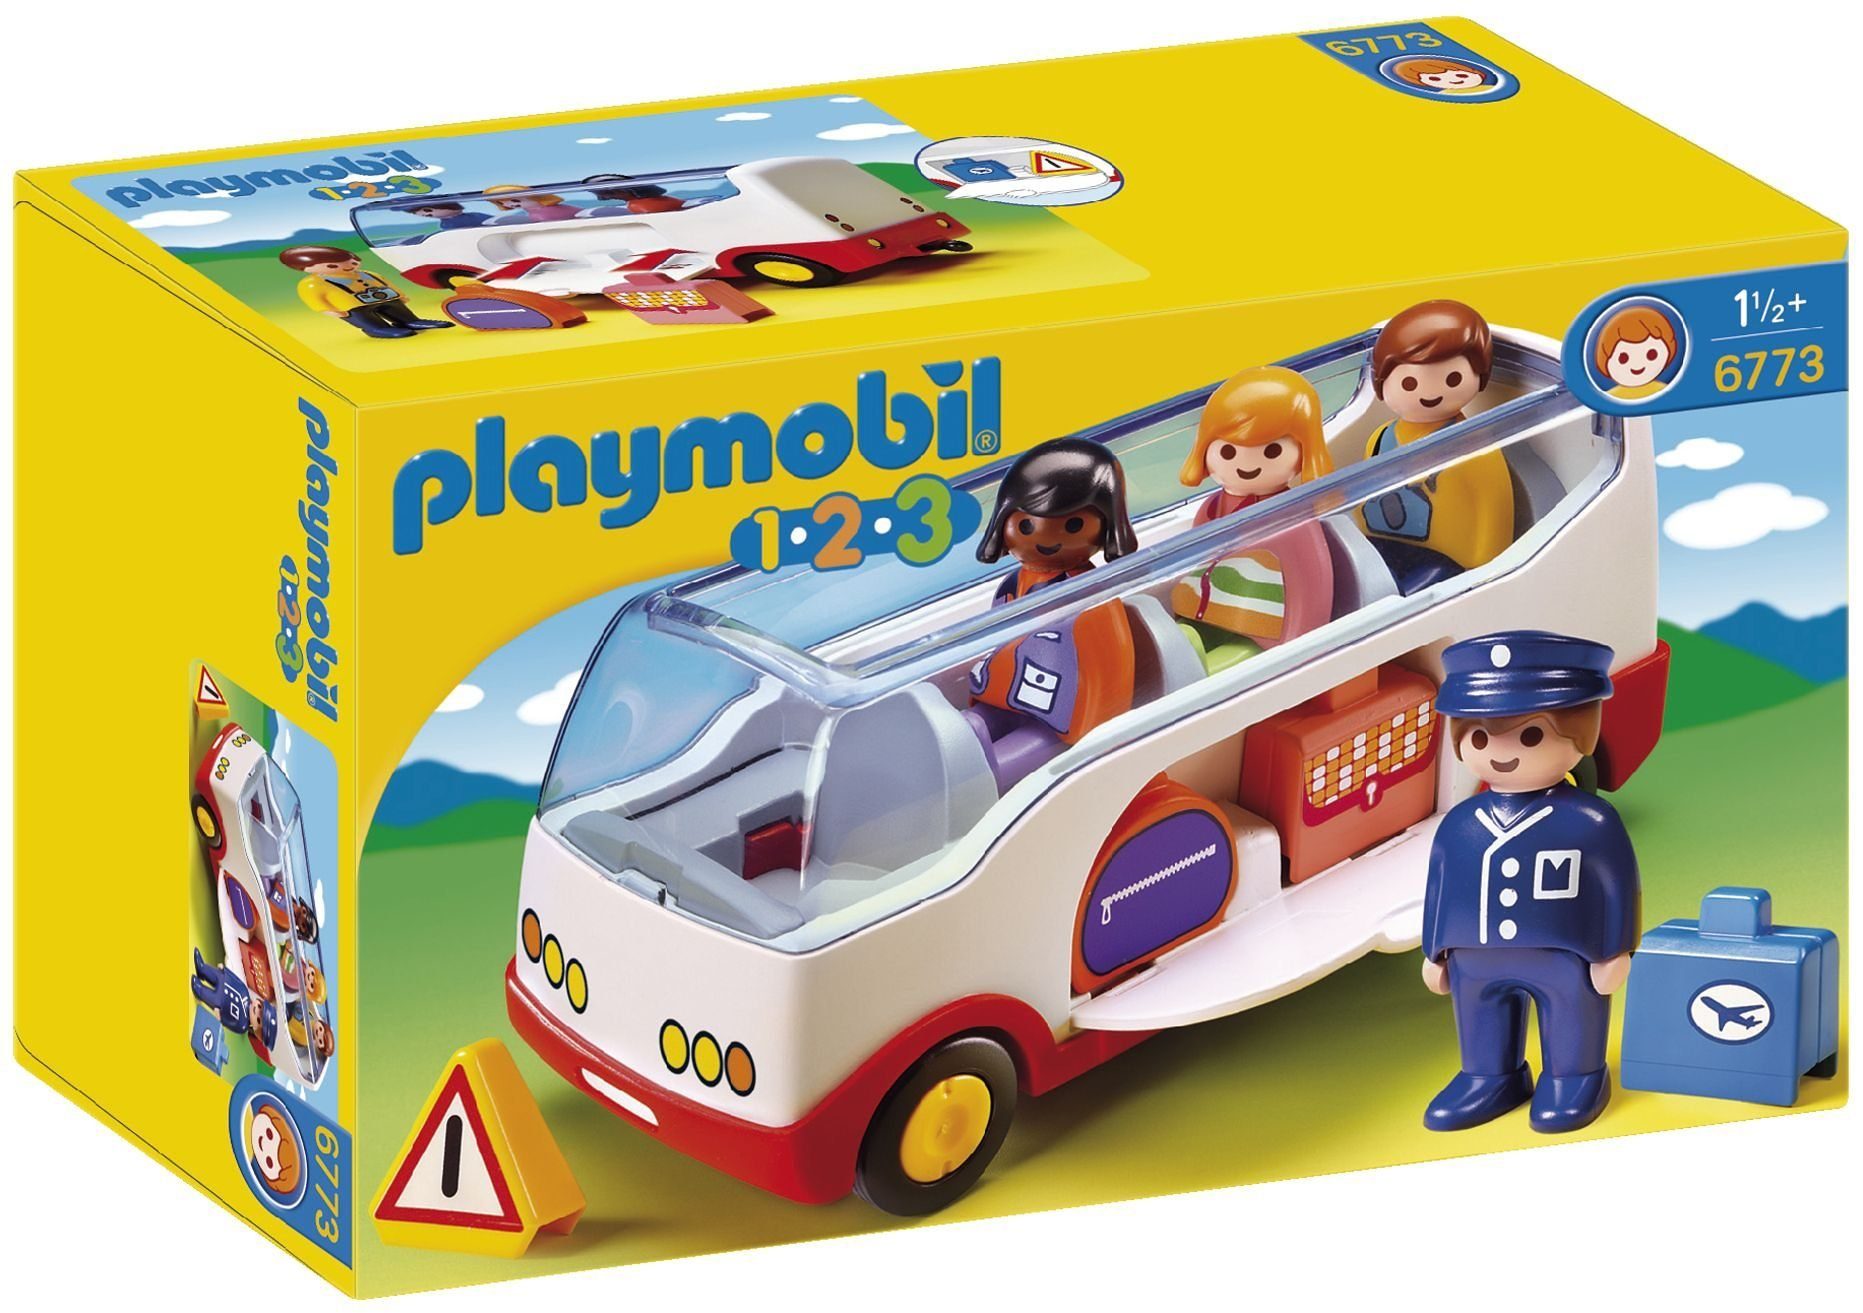 Playmobil® Konstruktions-Spielset Reisebus (6773), Playmobil 1-2-3, Made in Europe